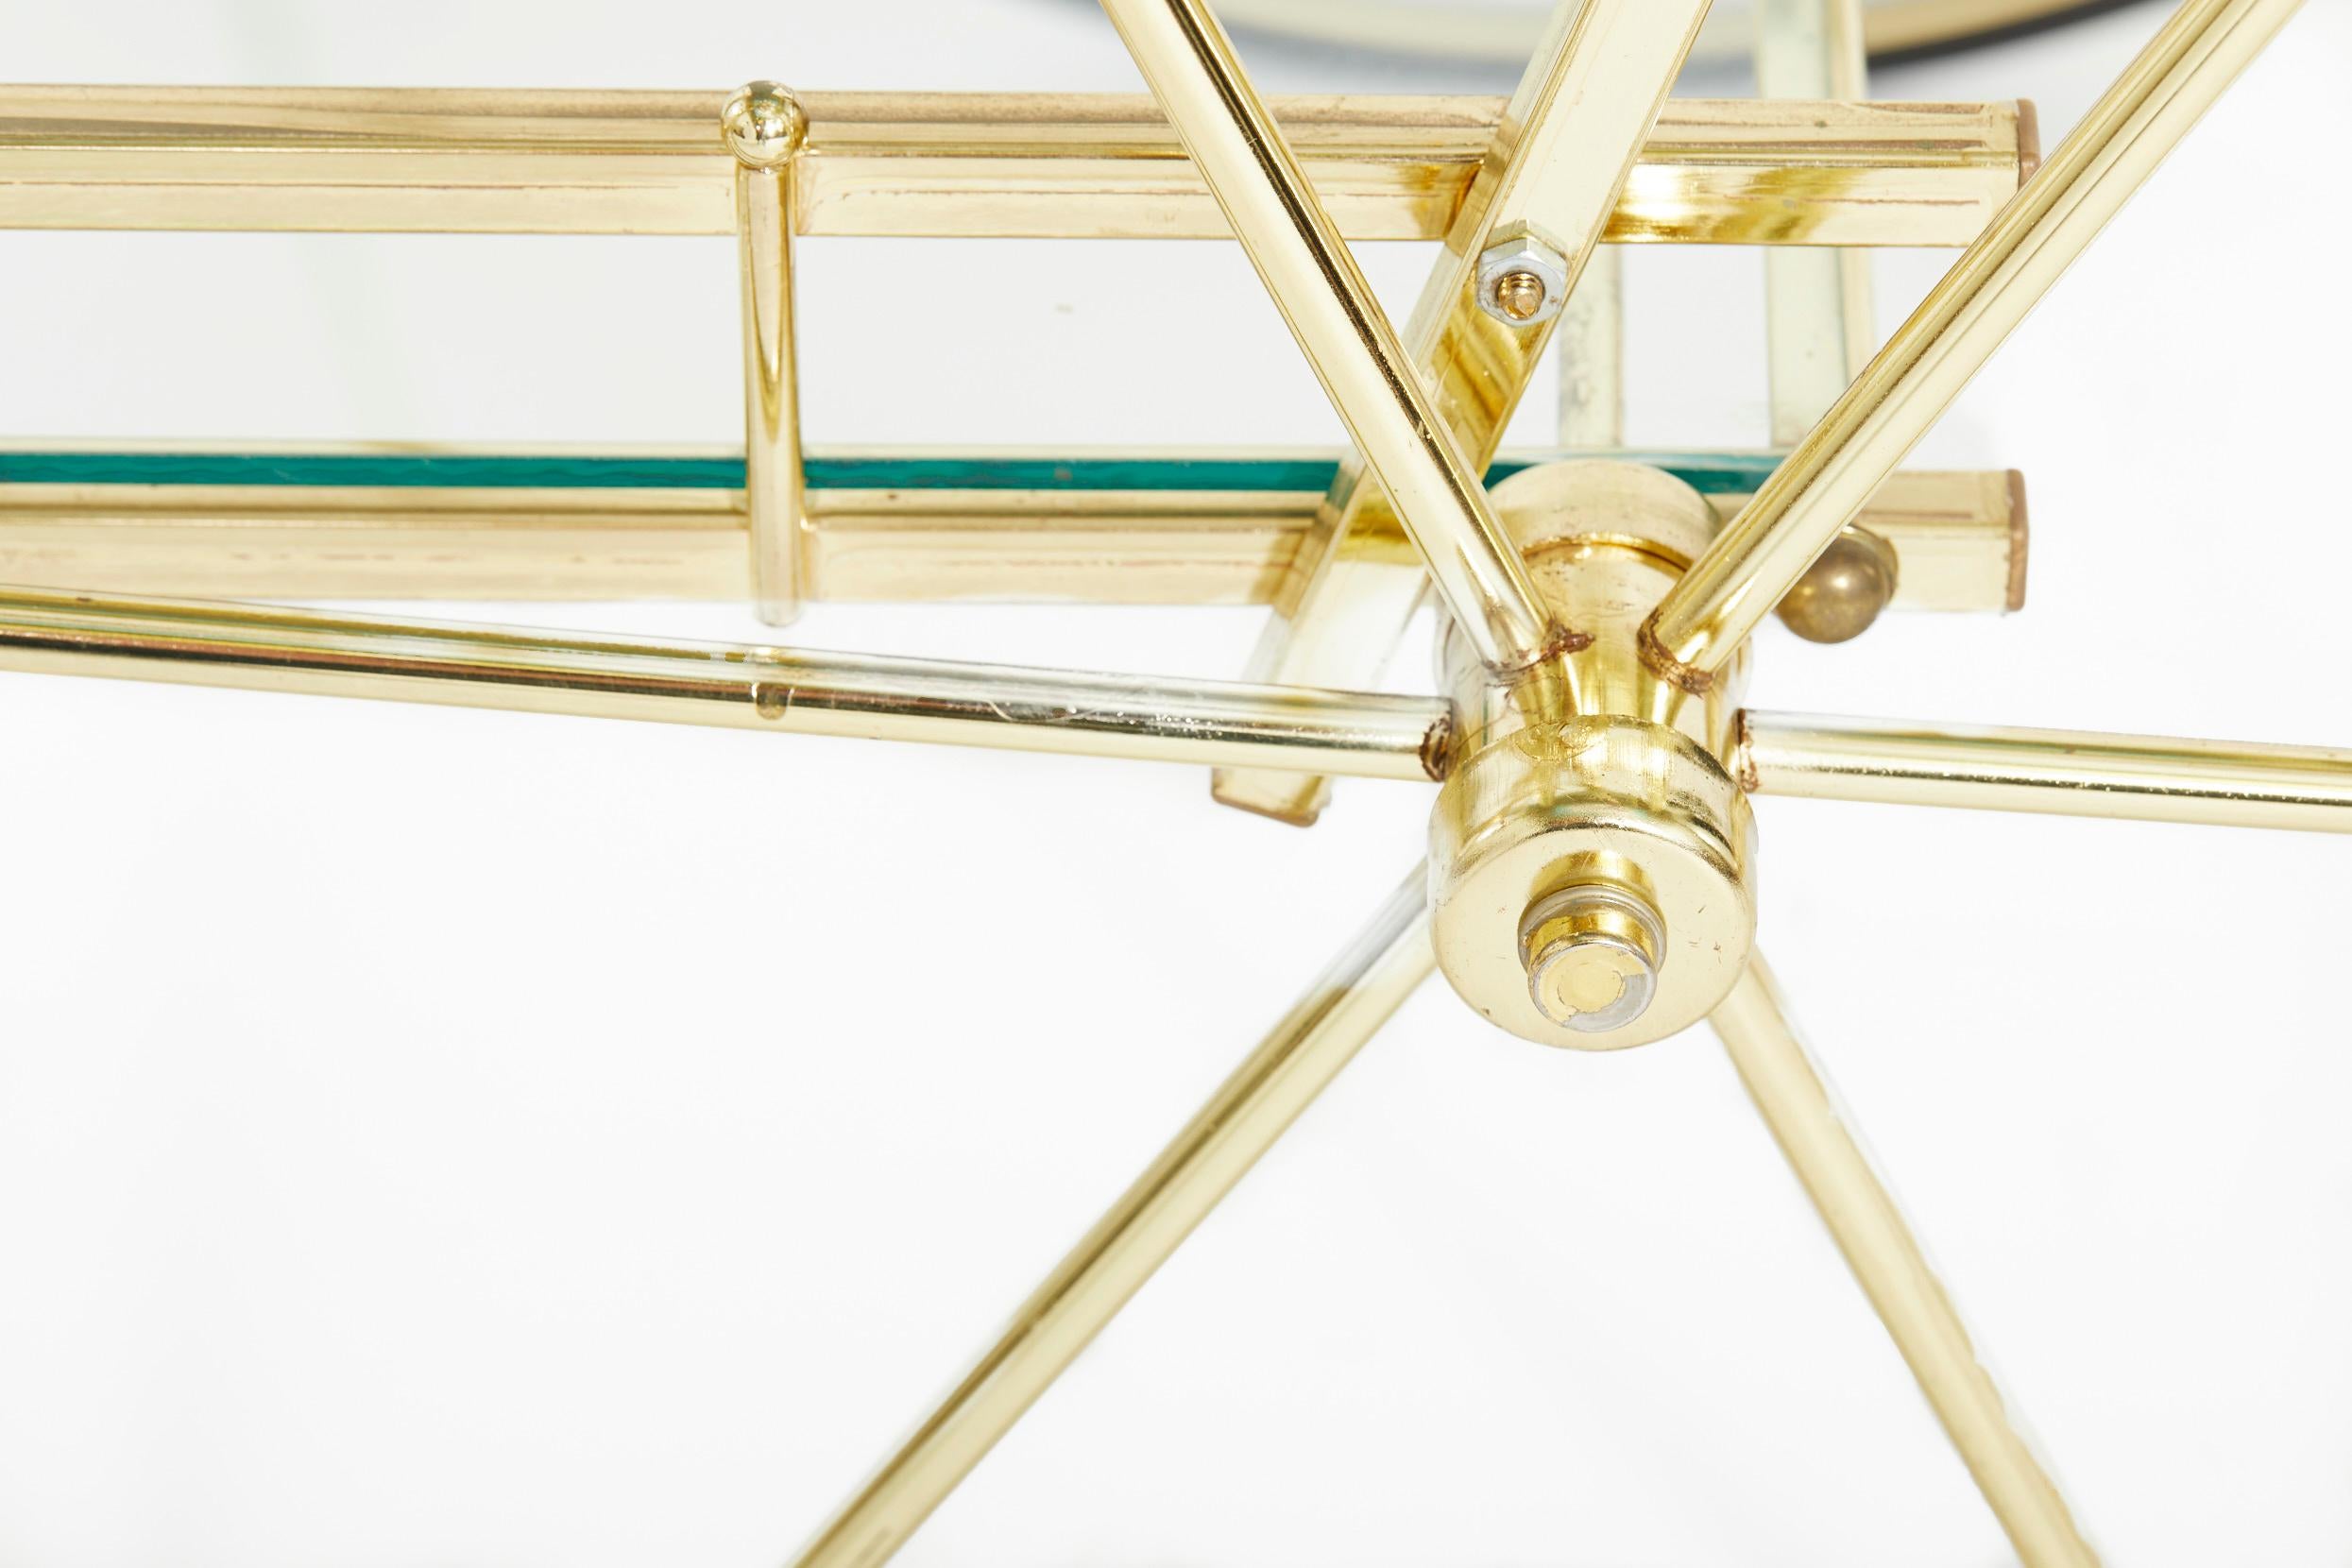 Gilt Mid-20th Century Brass / Glass Bar Cart